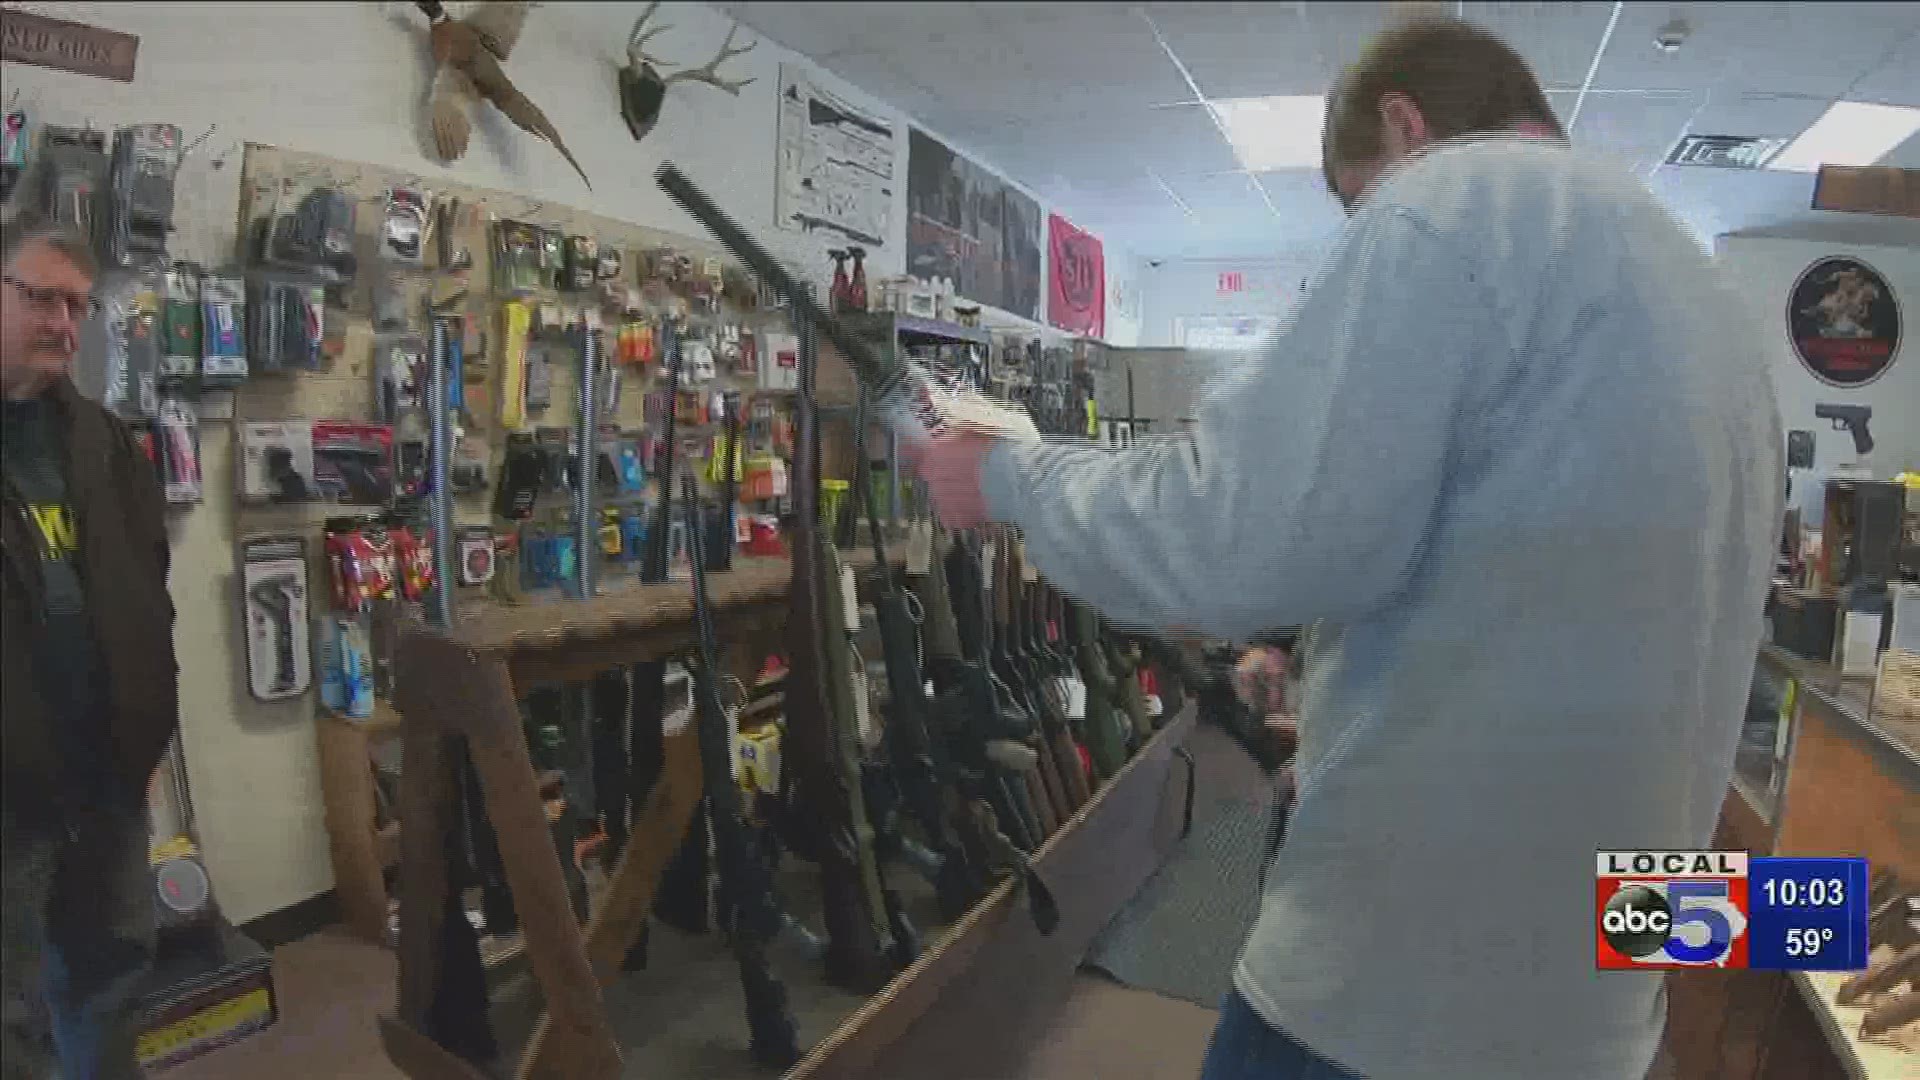 Local gun sales surge during pandemic